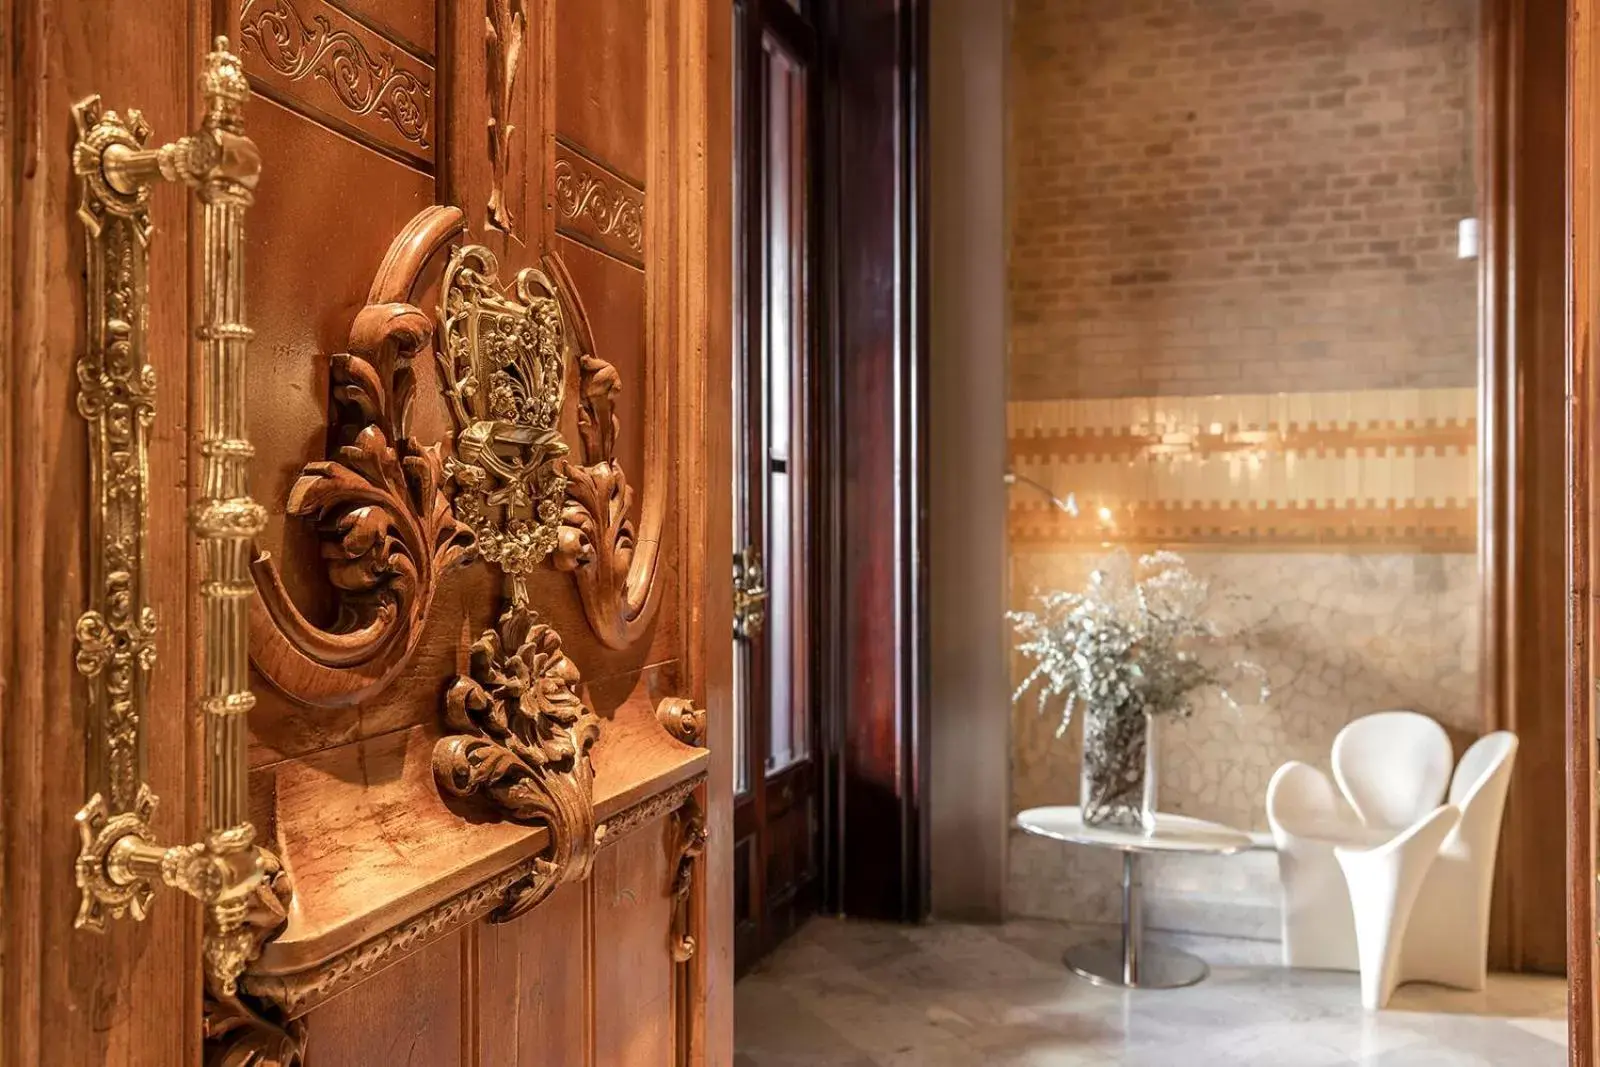 Bathroom in El Palauet Royal Suites